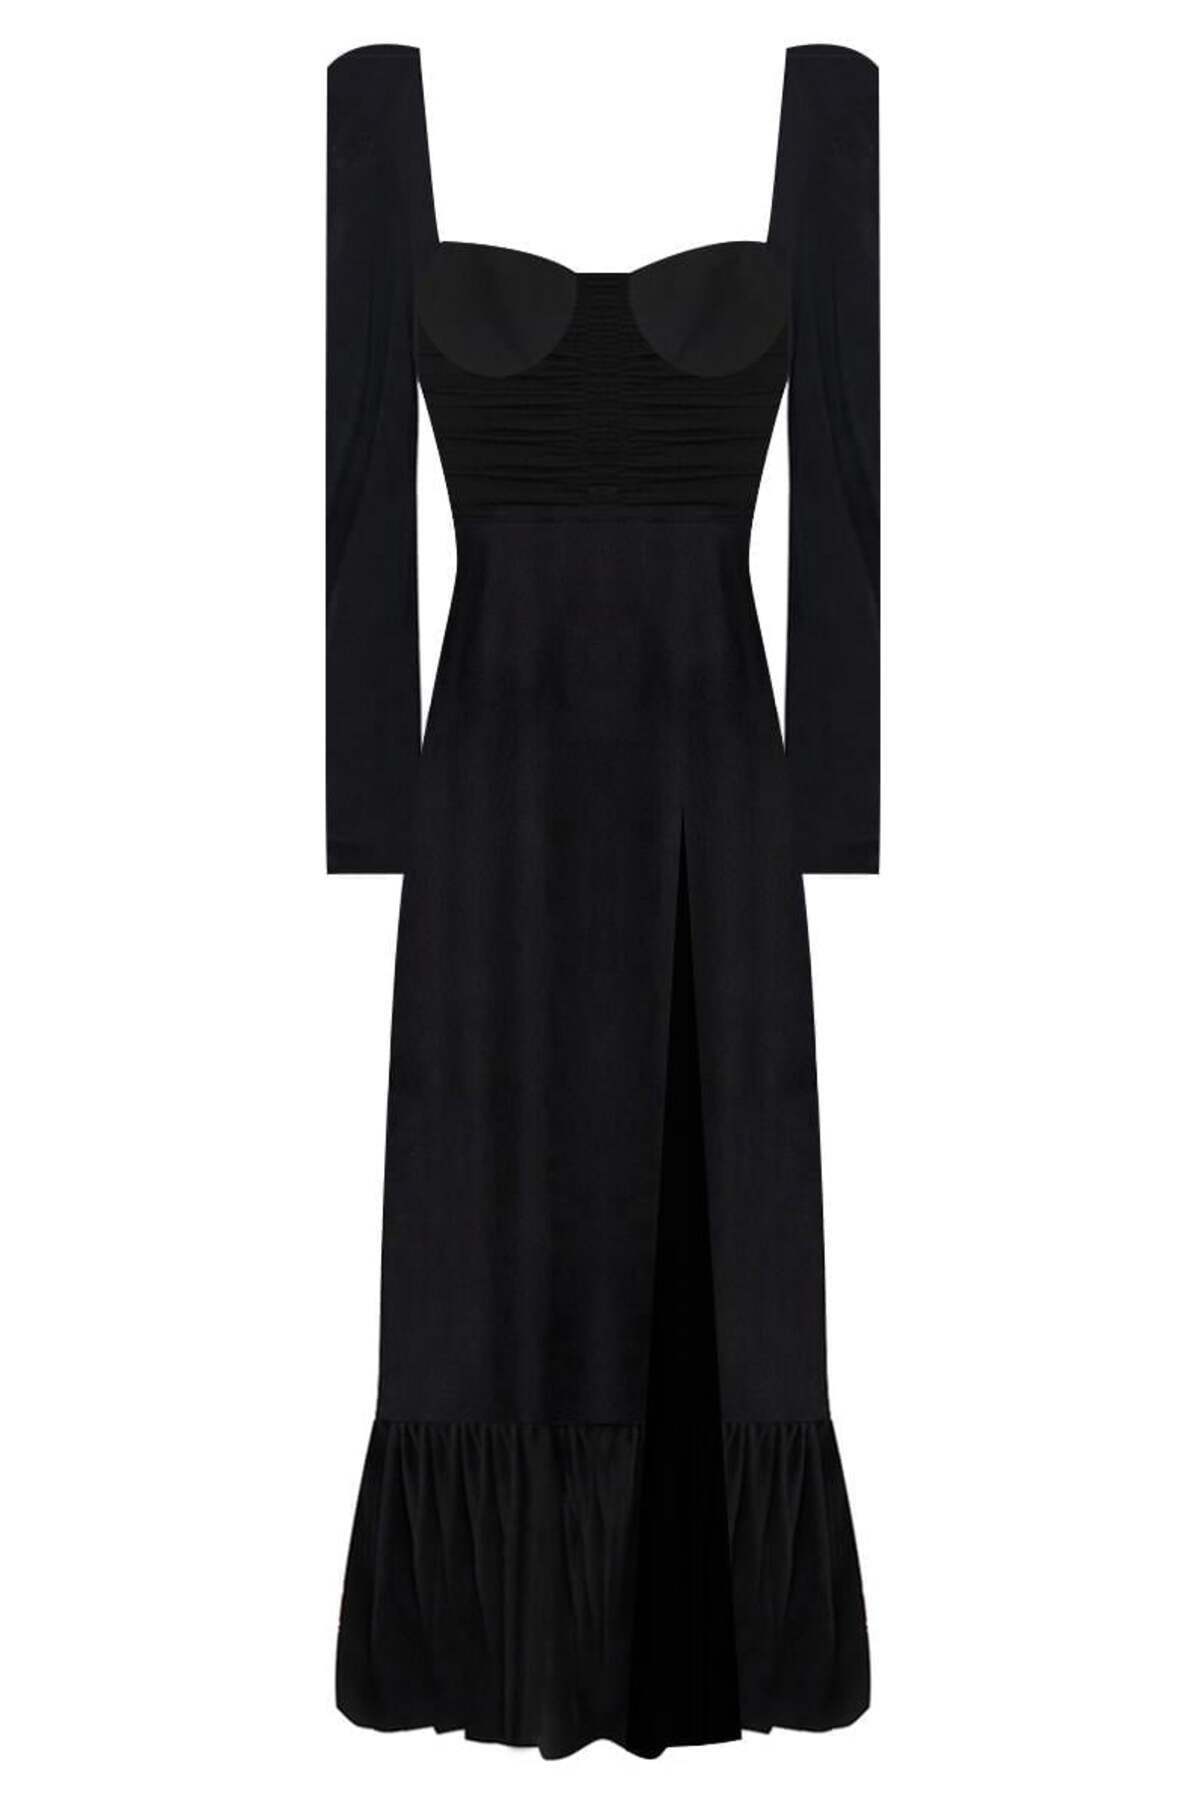 Muun Barbara Siyah Uzun Kol Midi Elbise